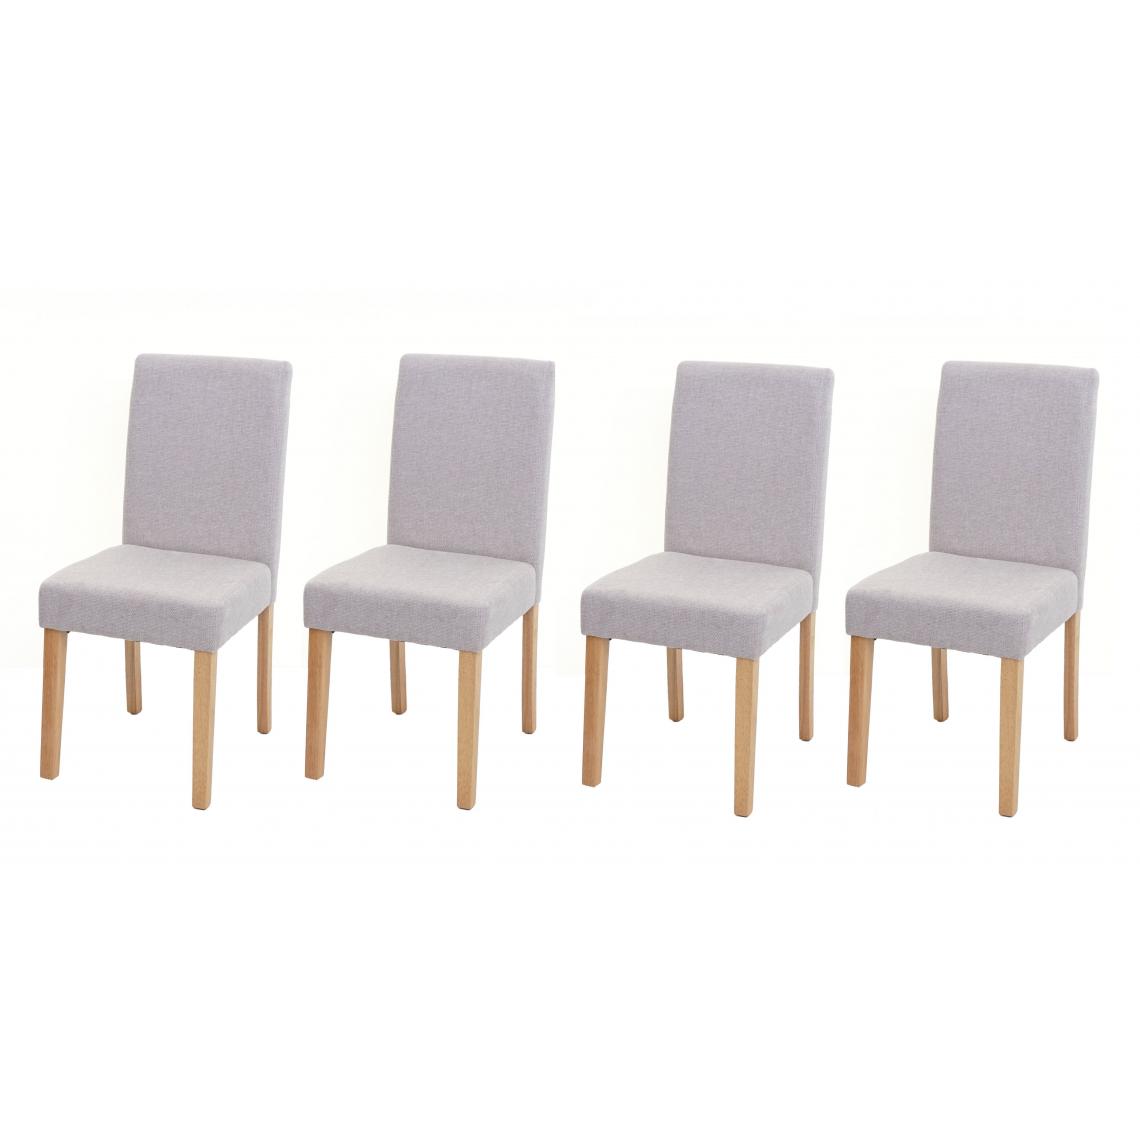 Decoshop26 - Lot de 4 chaises de salle à manger en tissu crème pieds clairs CDS04561 - Chaises